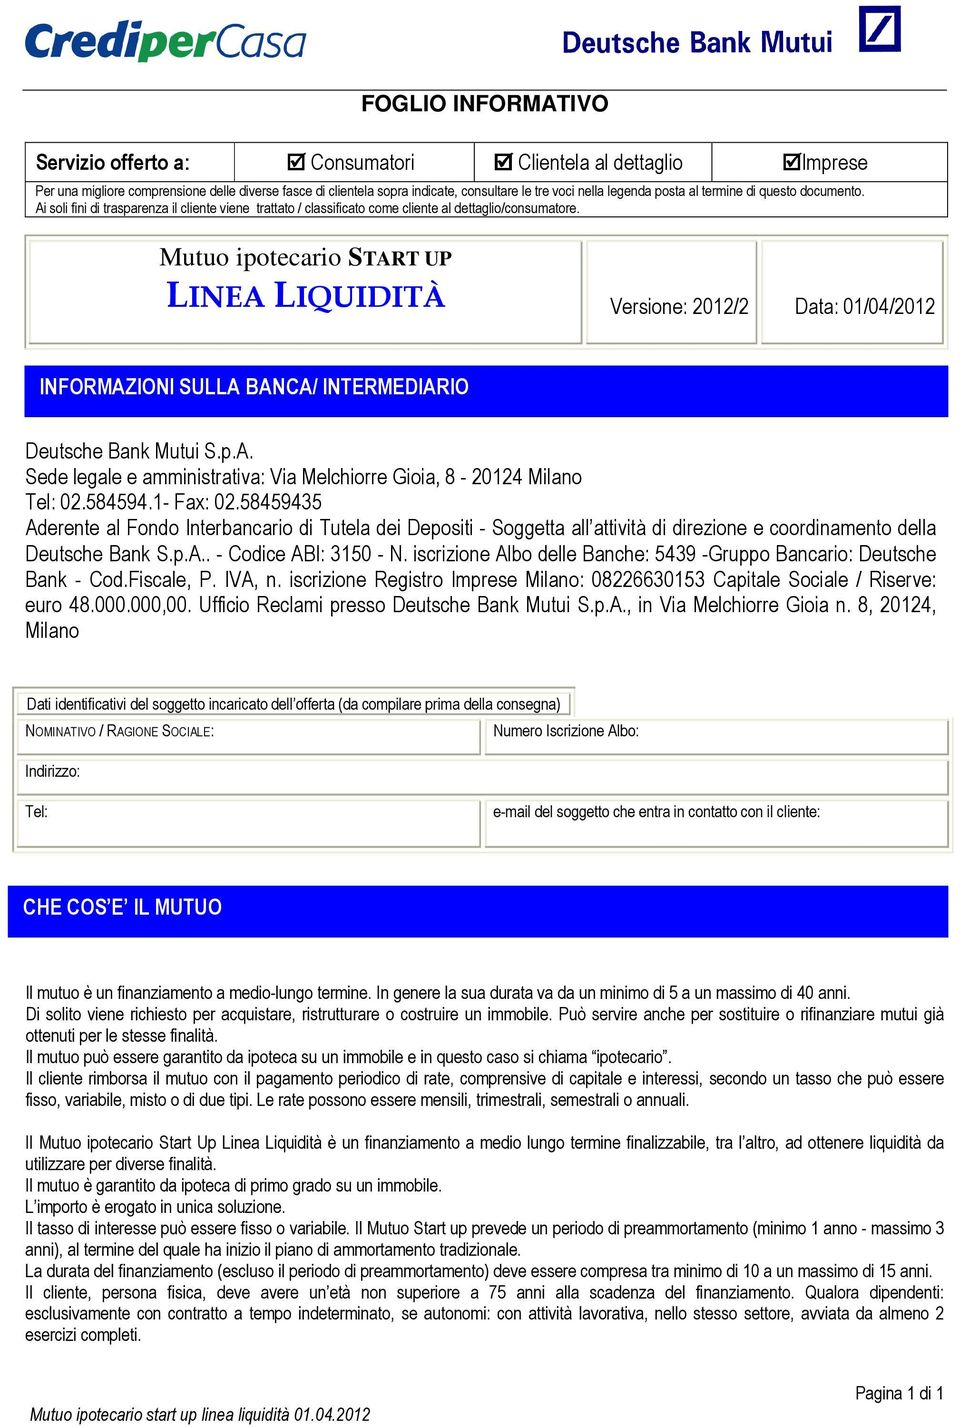 Mutuo ipotecario START UP LINEA LIQUIDITÀ Versione: 2012/2 Data: 01/04/2012 INFORMAZIONI SULLA BANCA/ INTERMEDIARIO Deutsche Bank Mutui S.p.A. Sede legale e amministrativa: Via Melchiorre Gioia, 8-20124 Milano Tel: 02.